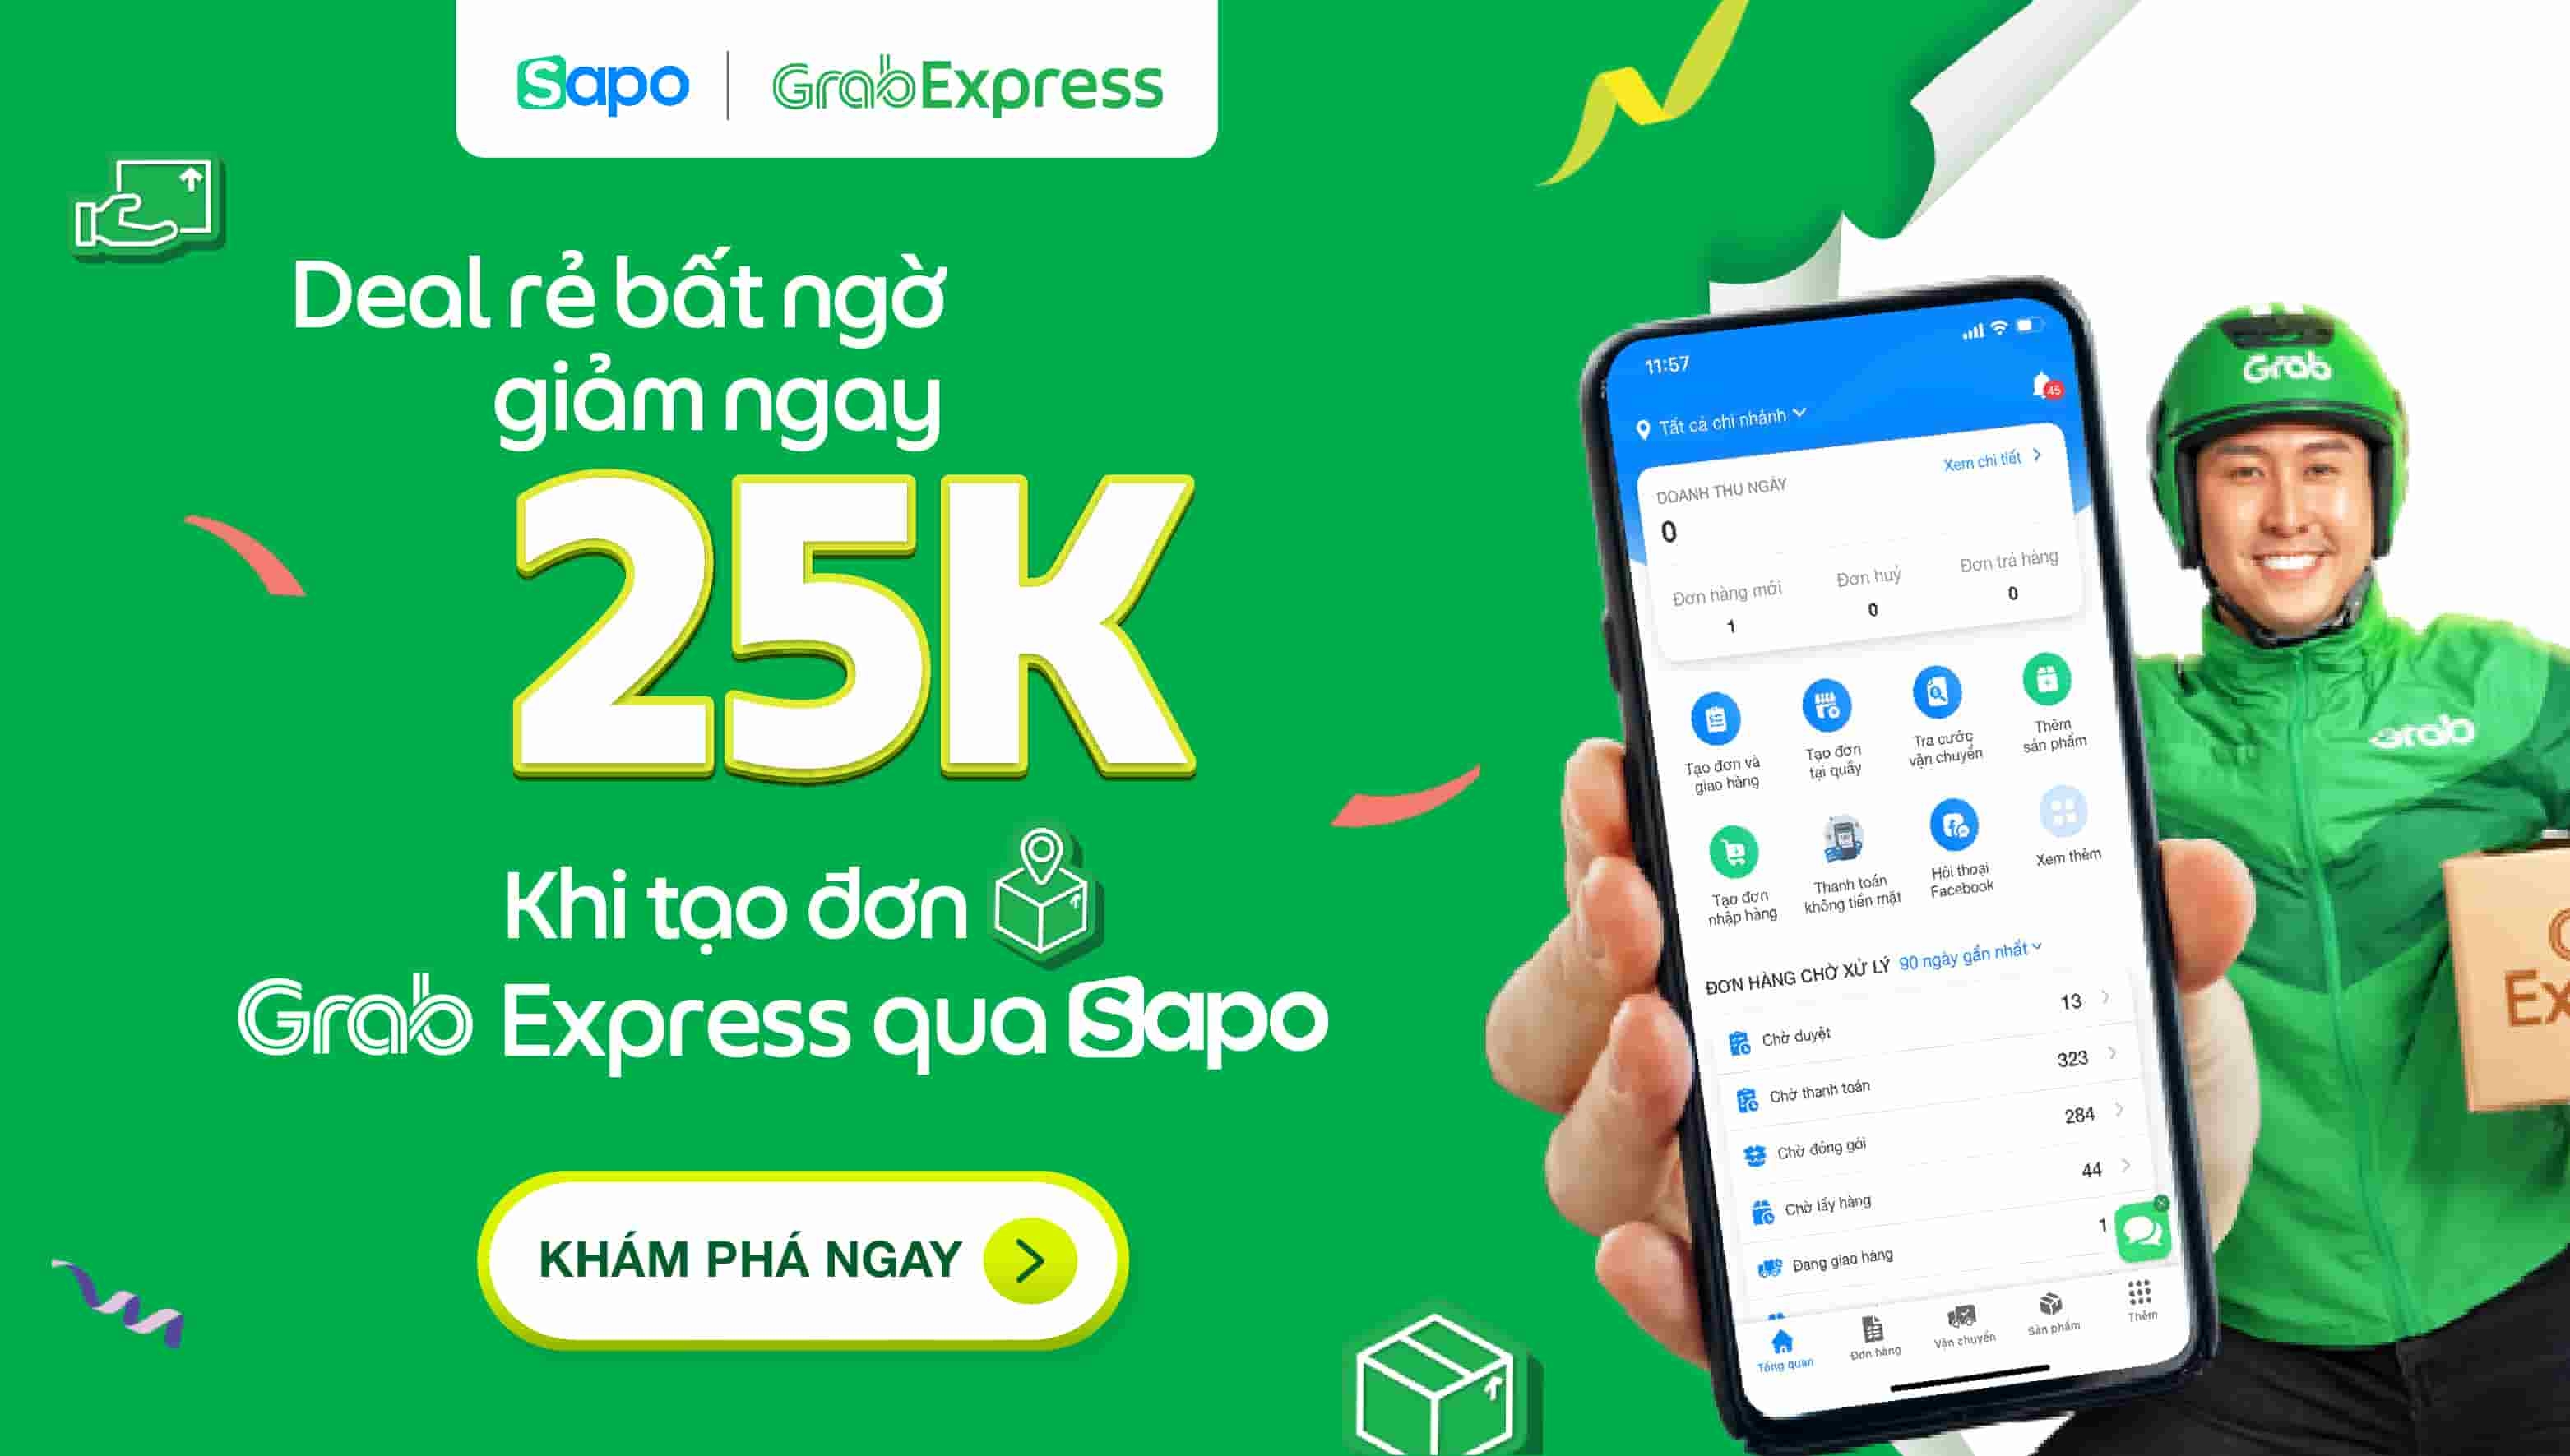 Deal rẻ bất ngờ, giảm ngay 25K khi tạo đơn Grab Express qua Sapo